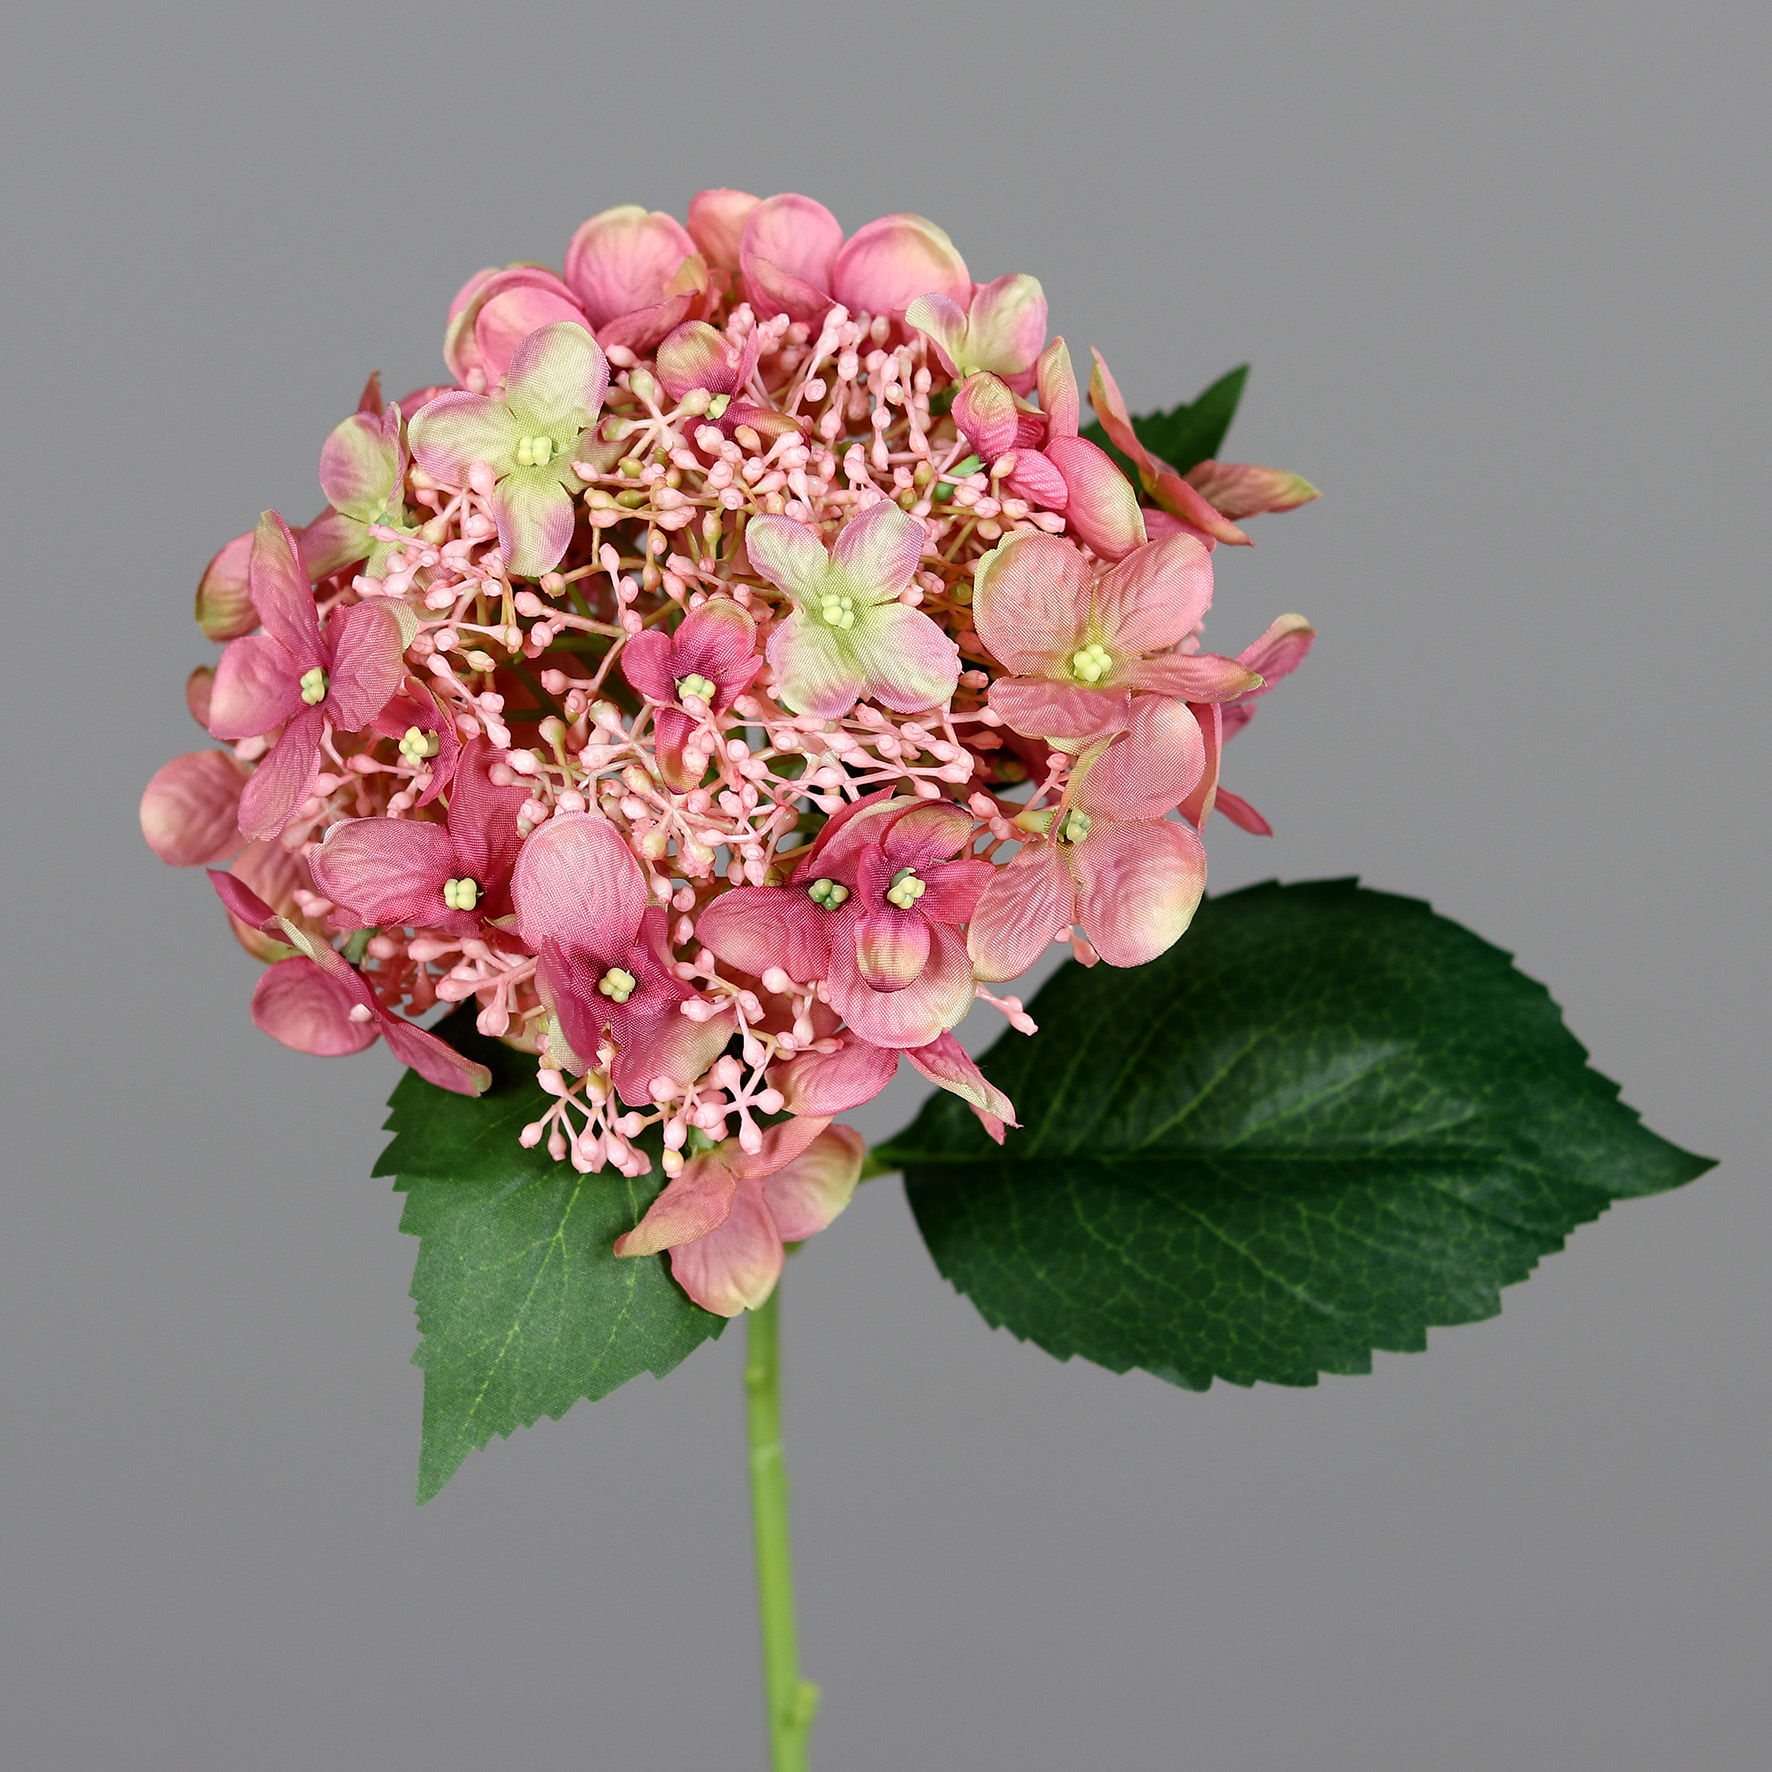 Sommer Hortensie 52cm rosa DP künstliche Blumen Hortensien Hydrangea Kunstlbumen